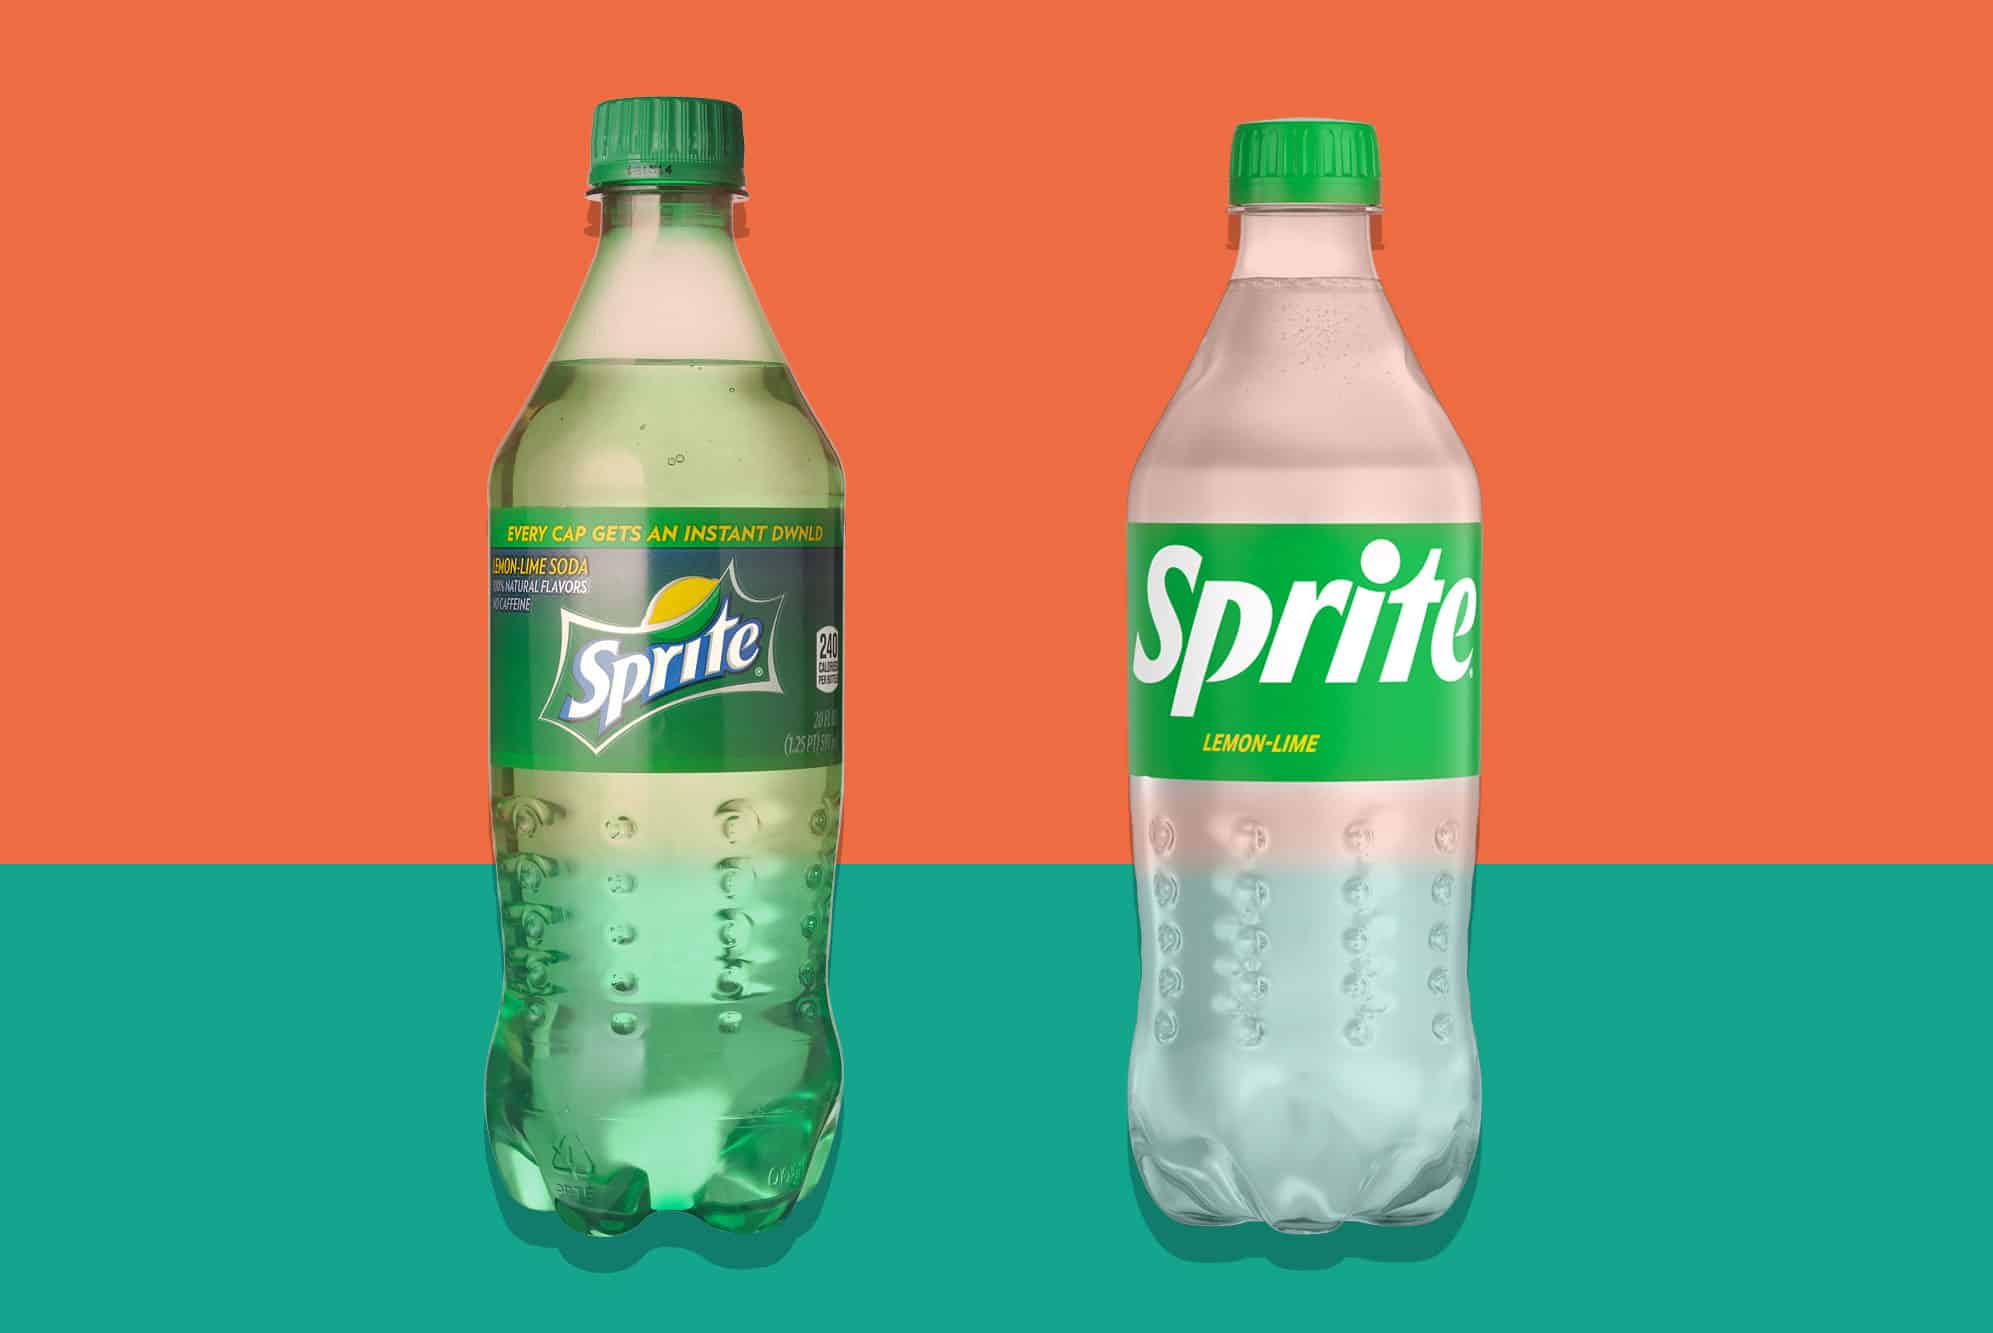 Sprite bottles